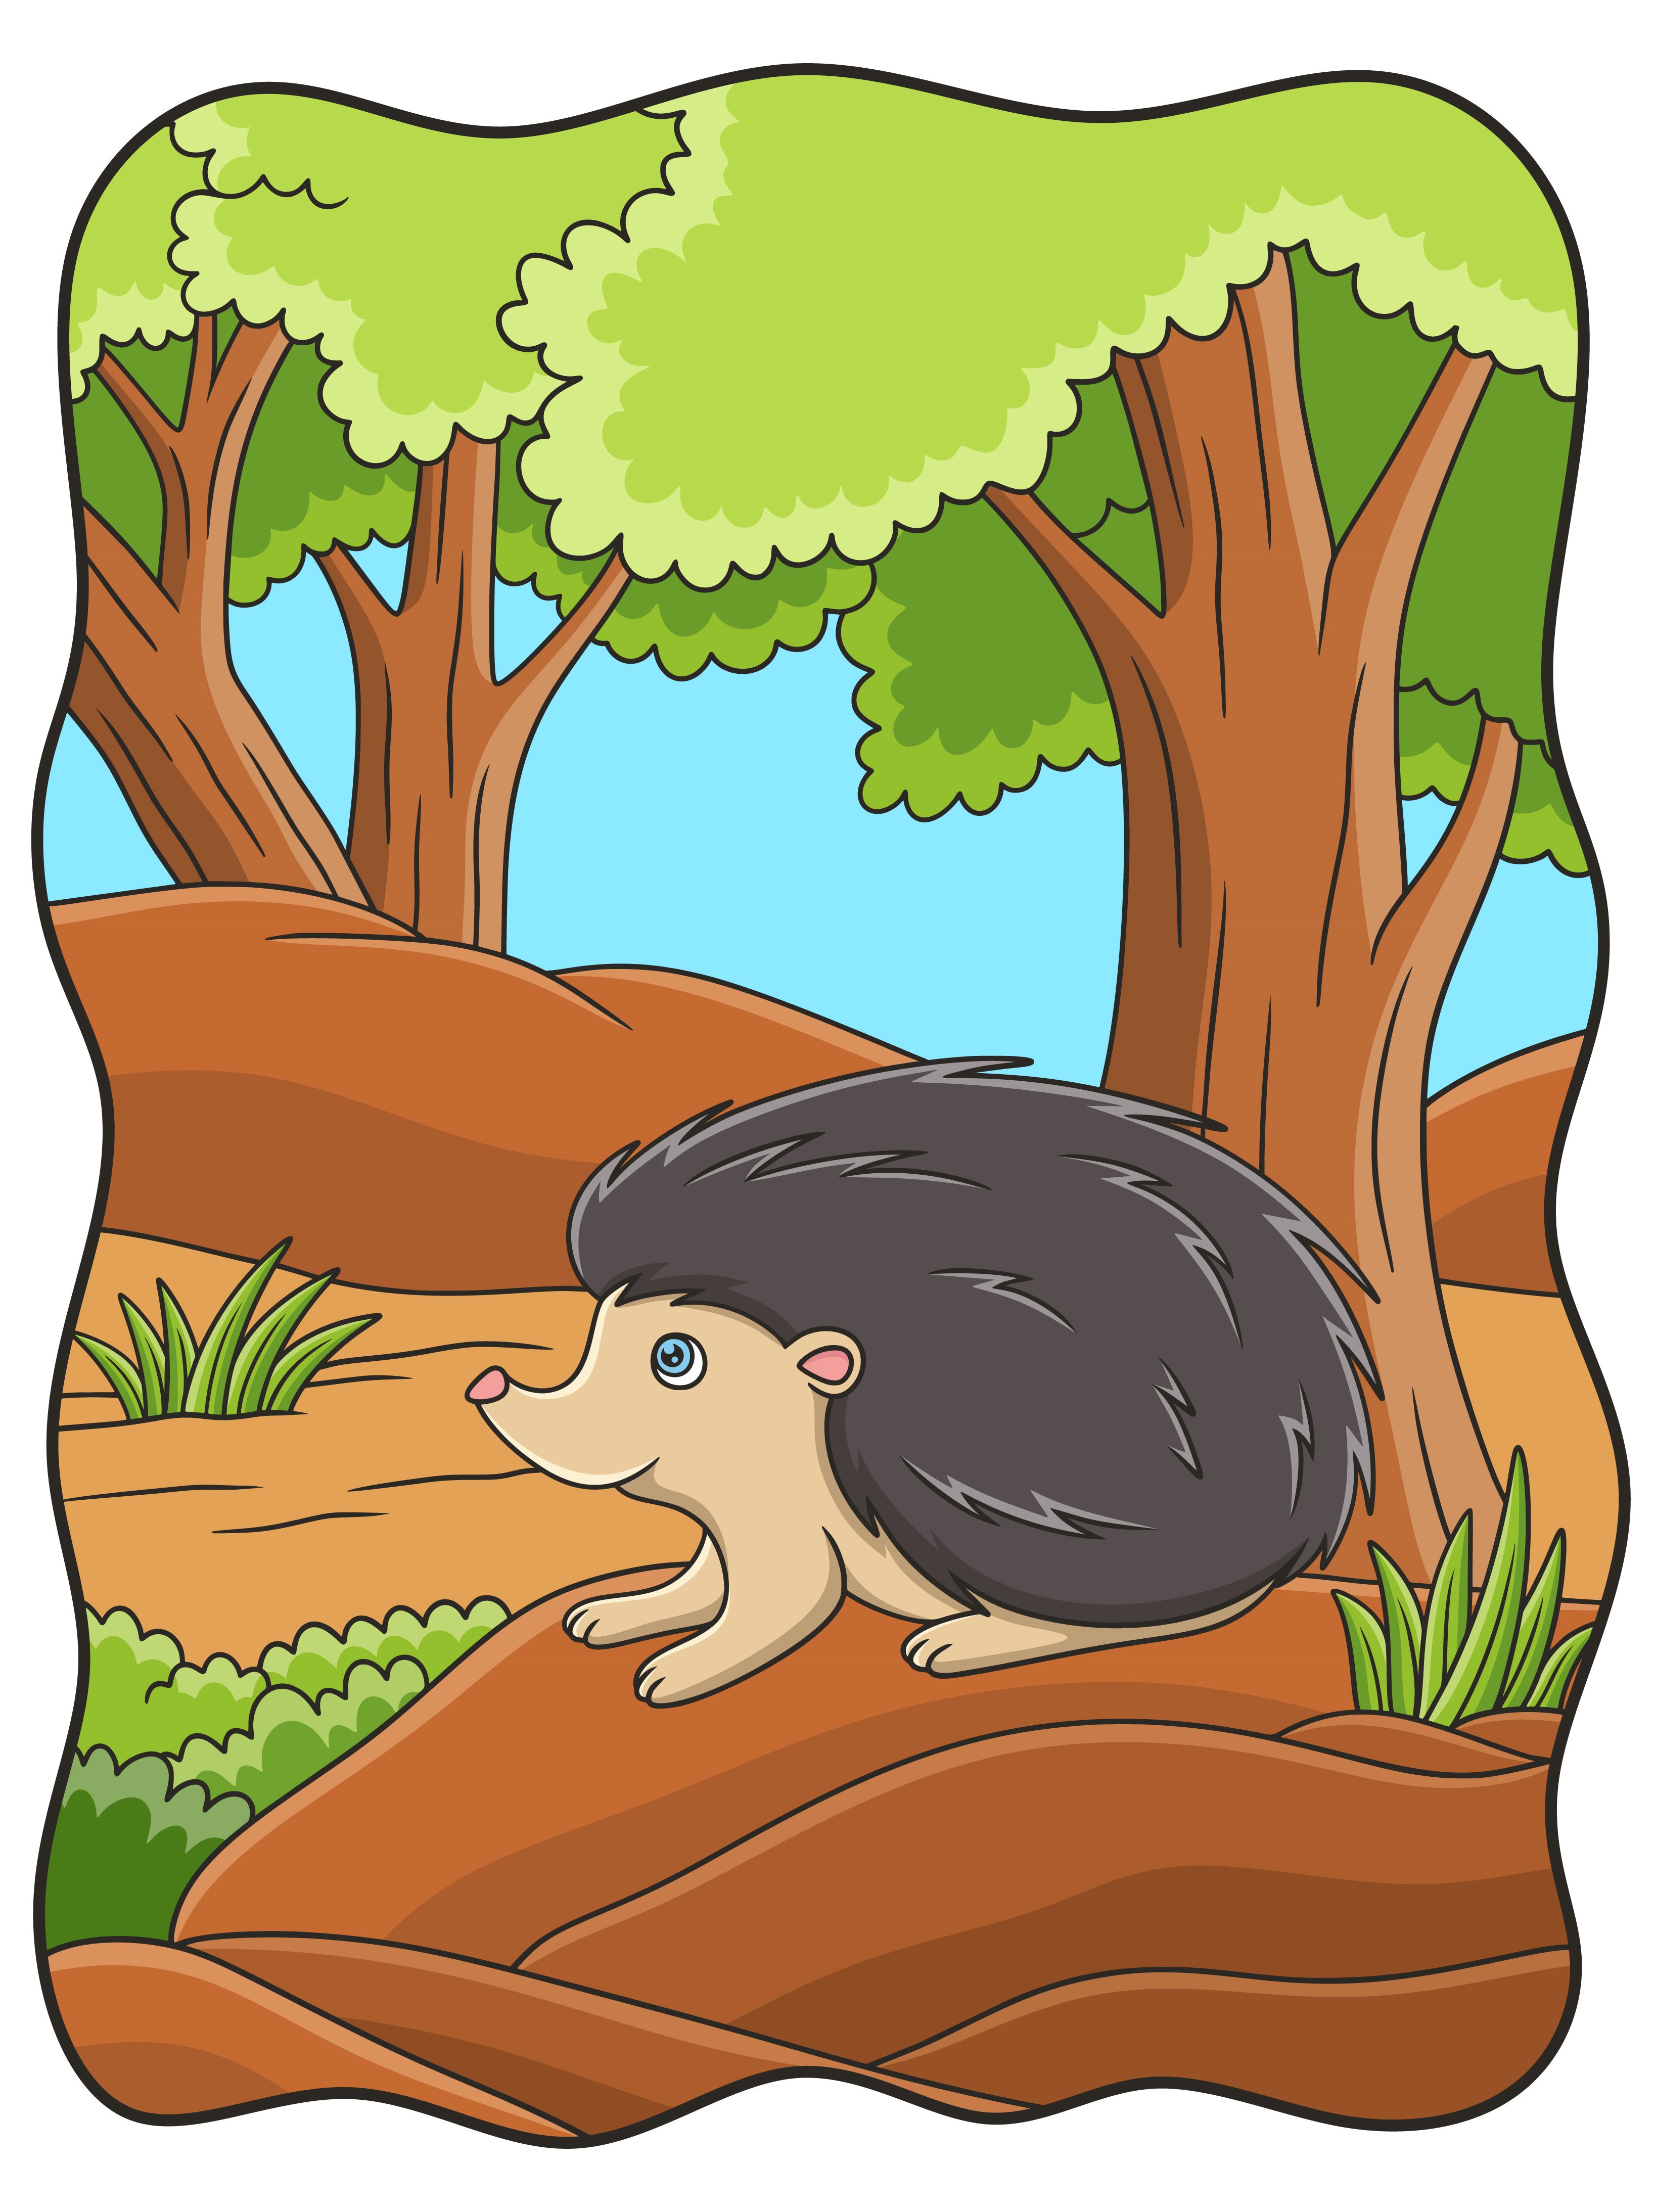 Раскраска ёжик из мультфильма на фоне леса формата А4 в высоком качестве